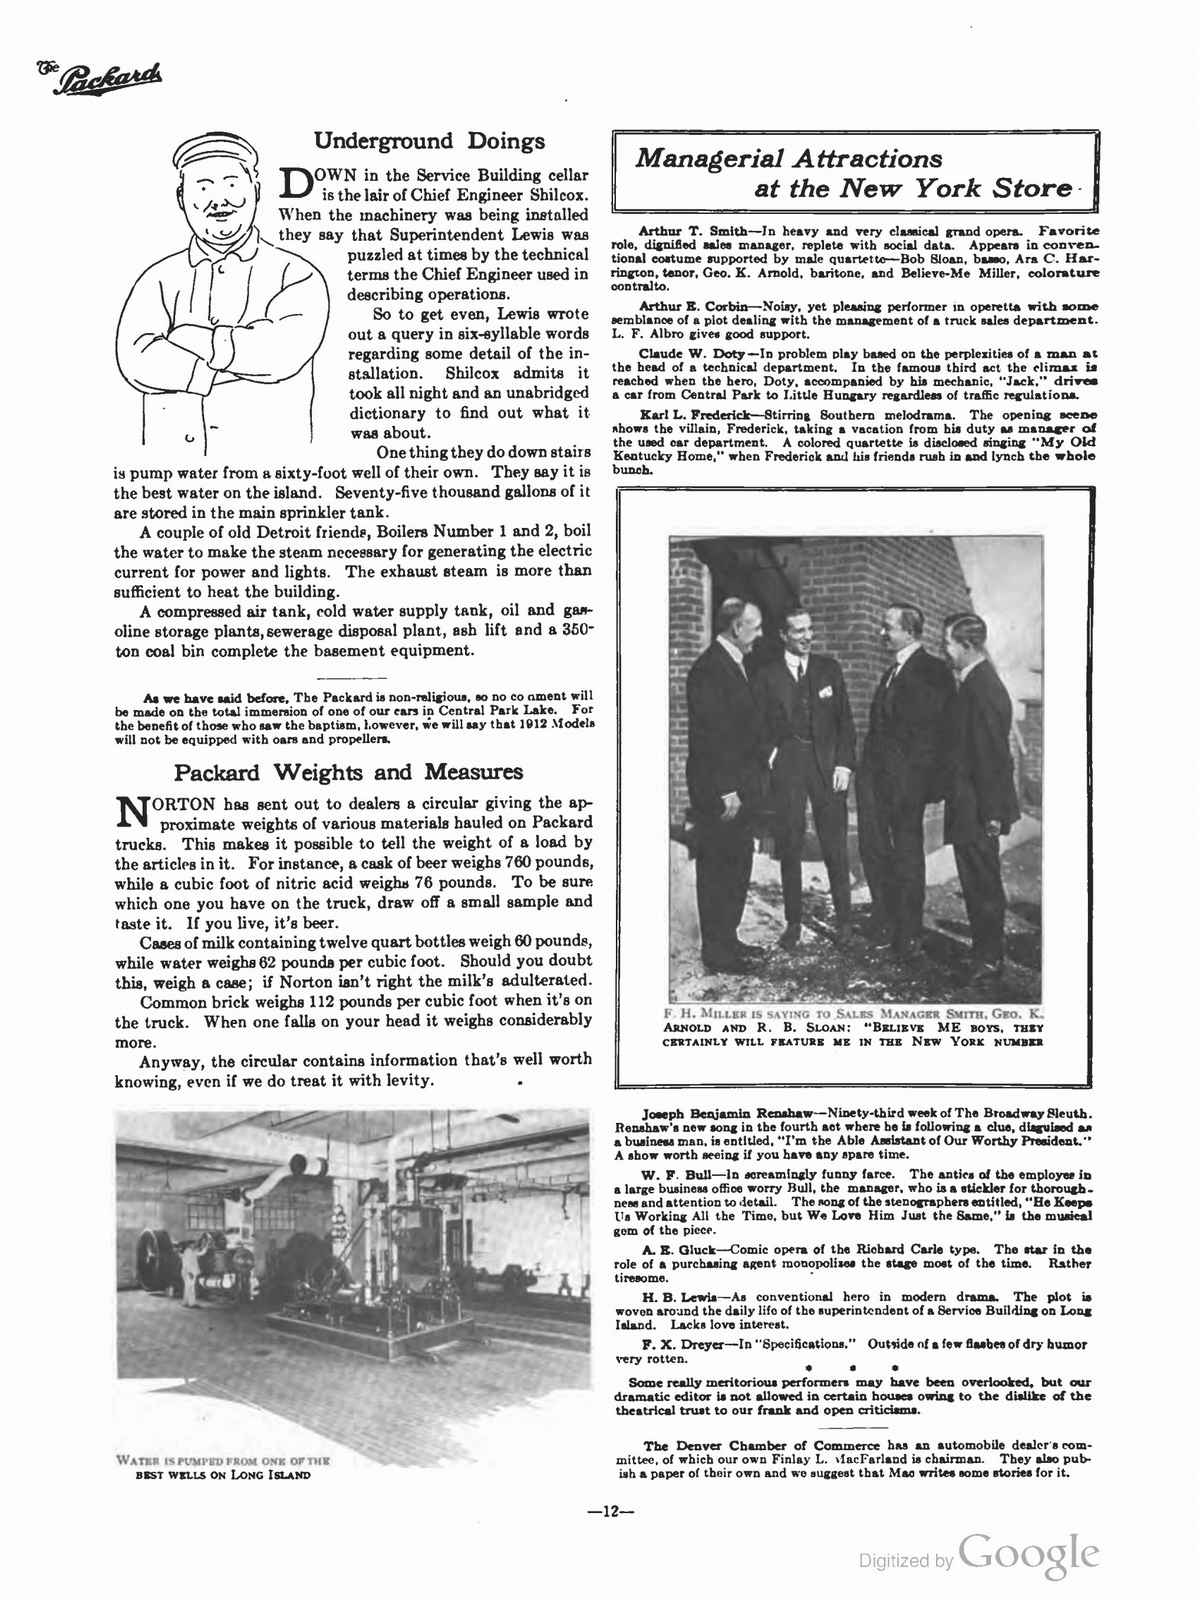 n_1910 'The Packard' Newsletter-262.jpg